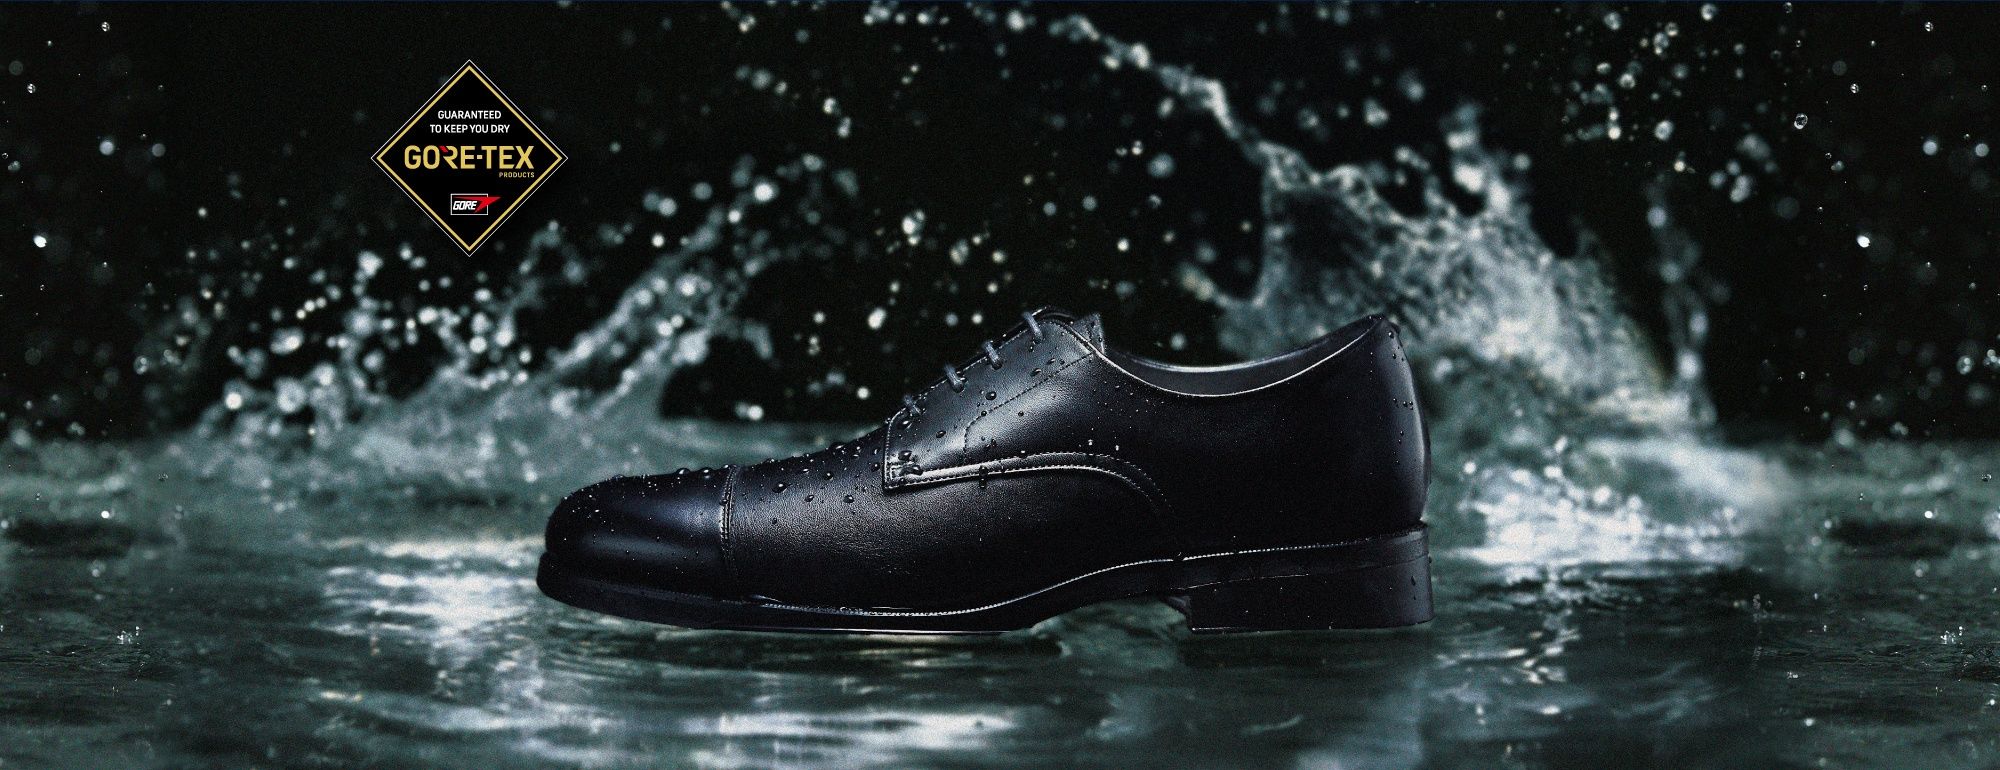 優れた防水透湿性で、靴内の快適性を維持する。GORE-TEX Series